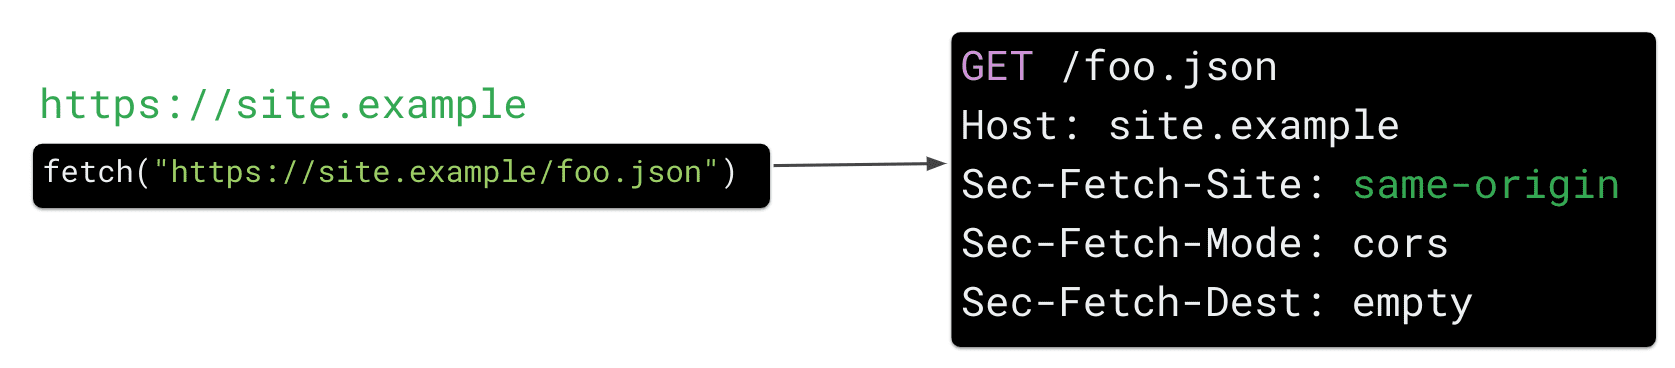 জাভাস্ক্রিপ্টে https://site.example/foo.json রিসোর্সের জন্য একটি আনার অনুরোধ ব্রাউজারকে HTTP অনুরোধ শিরোনাম 'Sec Fetch-Site: same-origin' পাঠাতে বাধ্য করে।